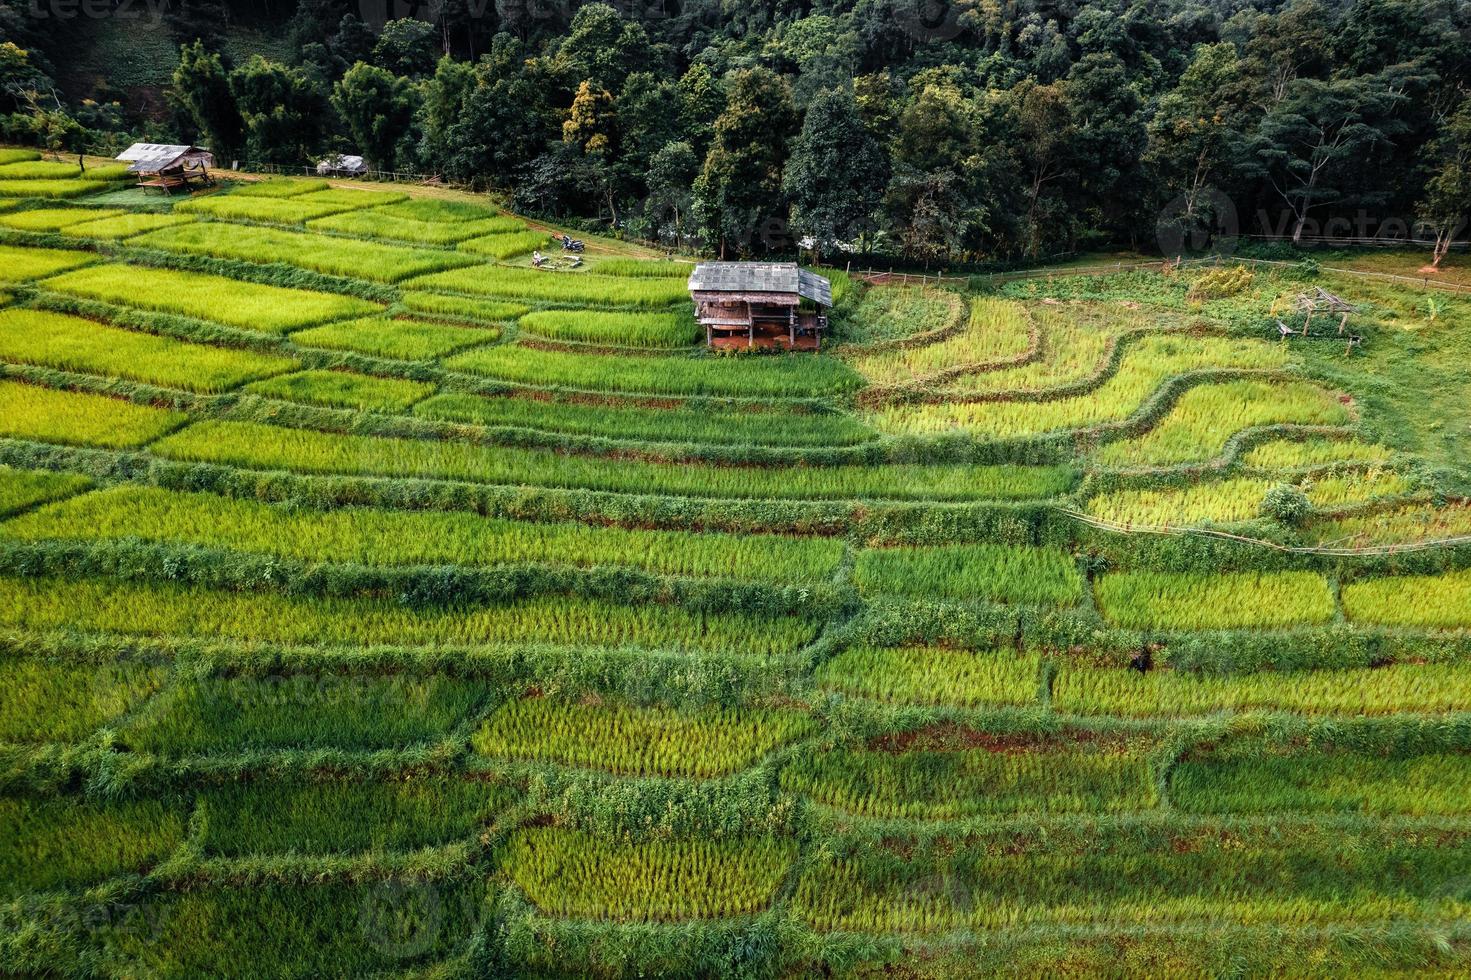 rizières vertes pendant la saison des pluies du haut au-dessus photo